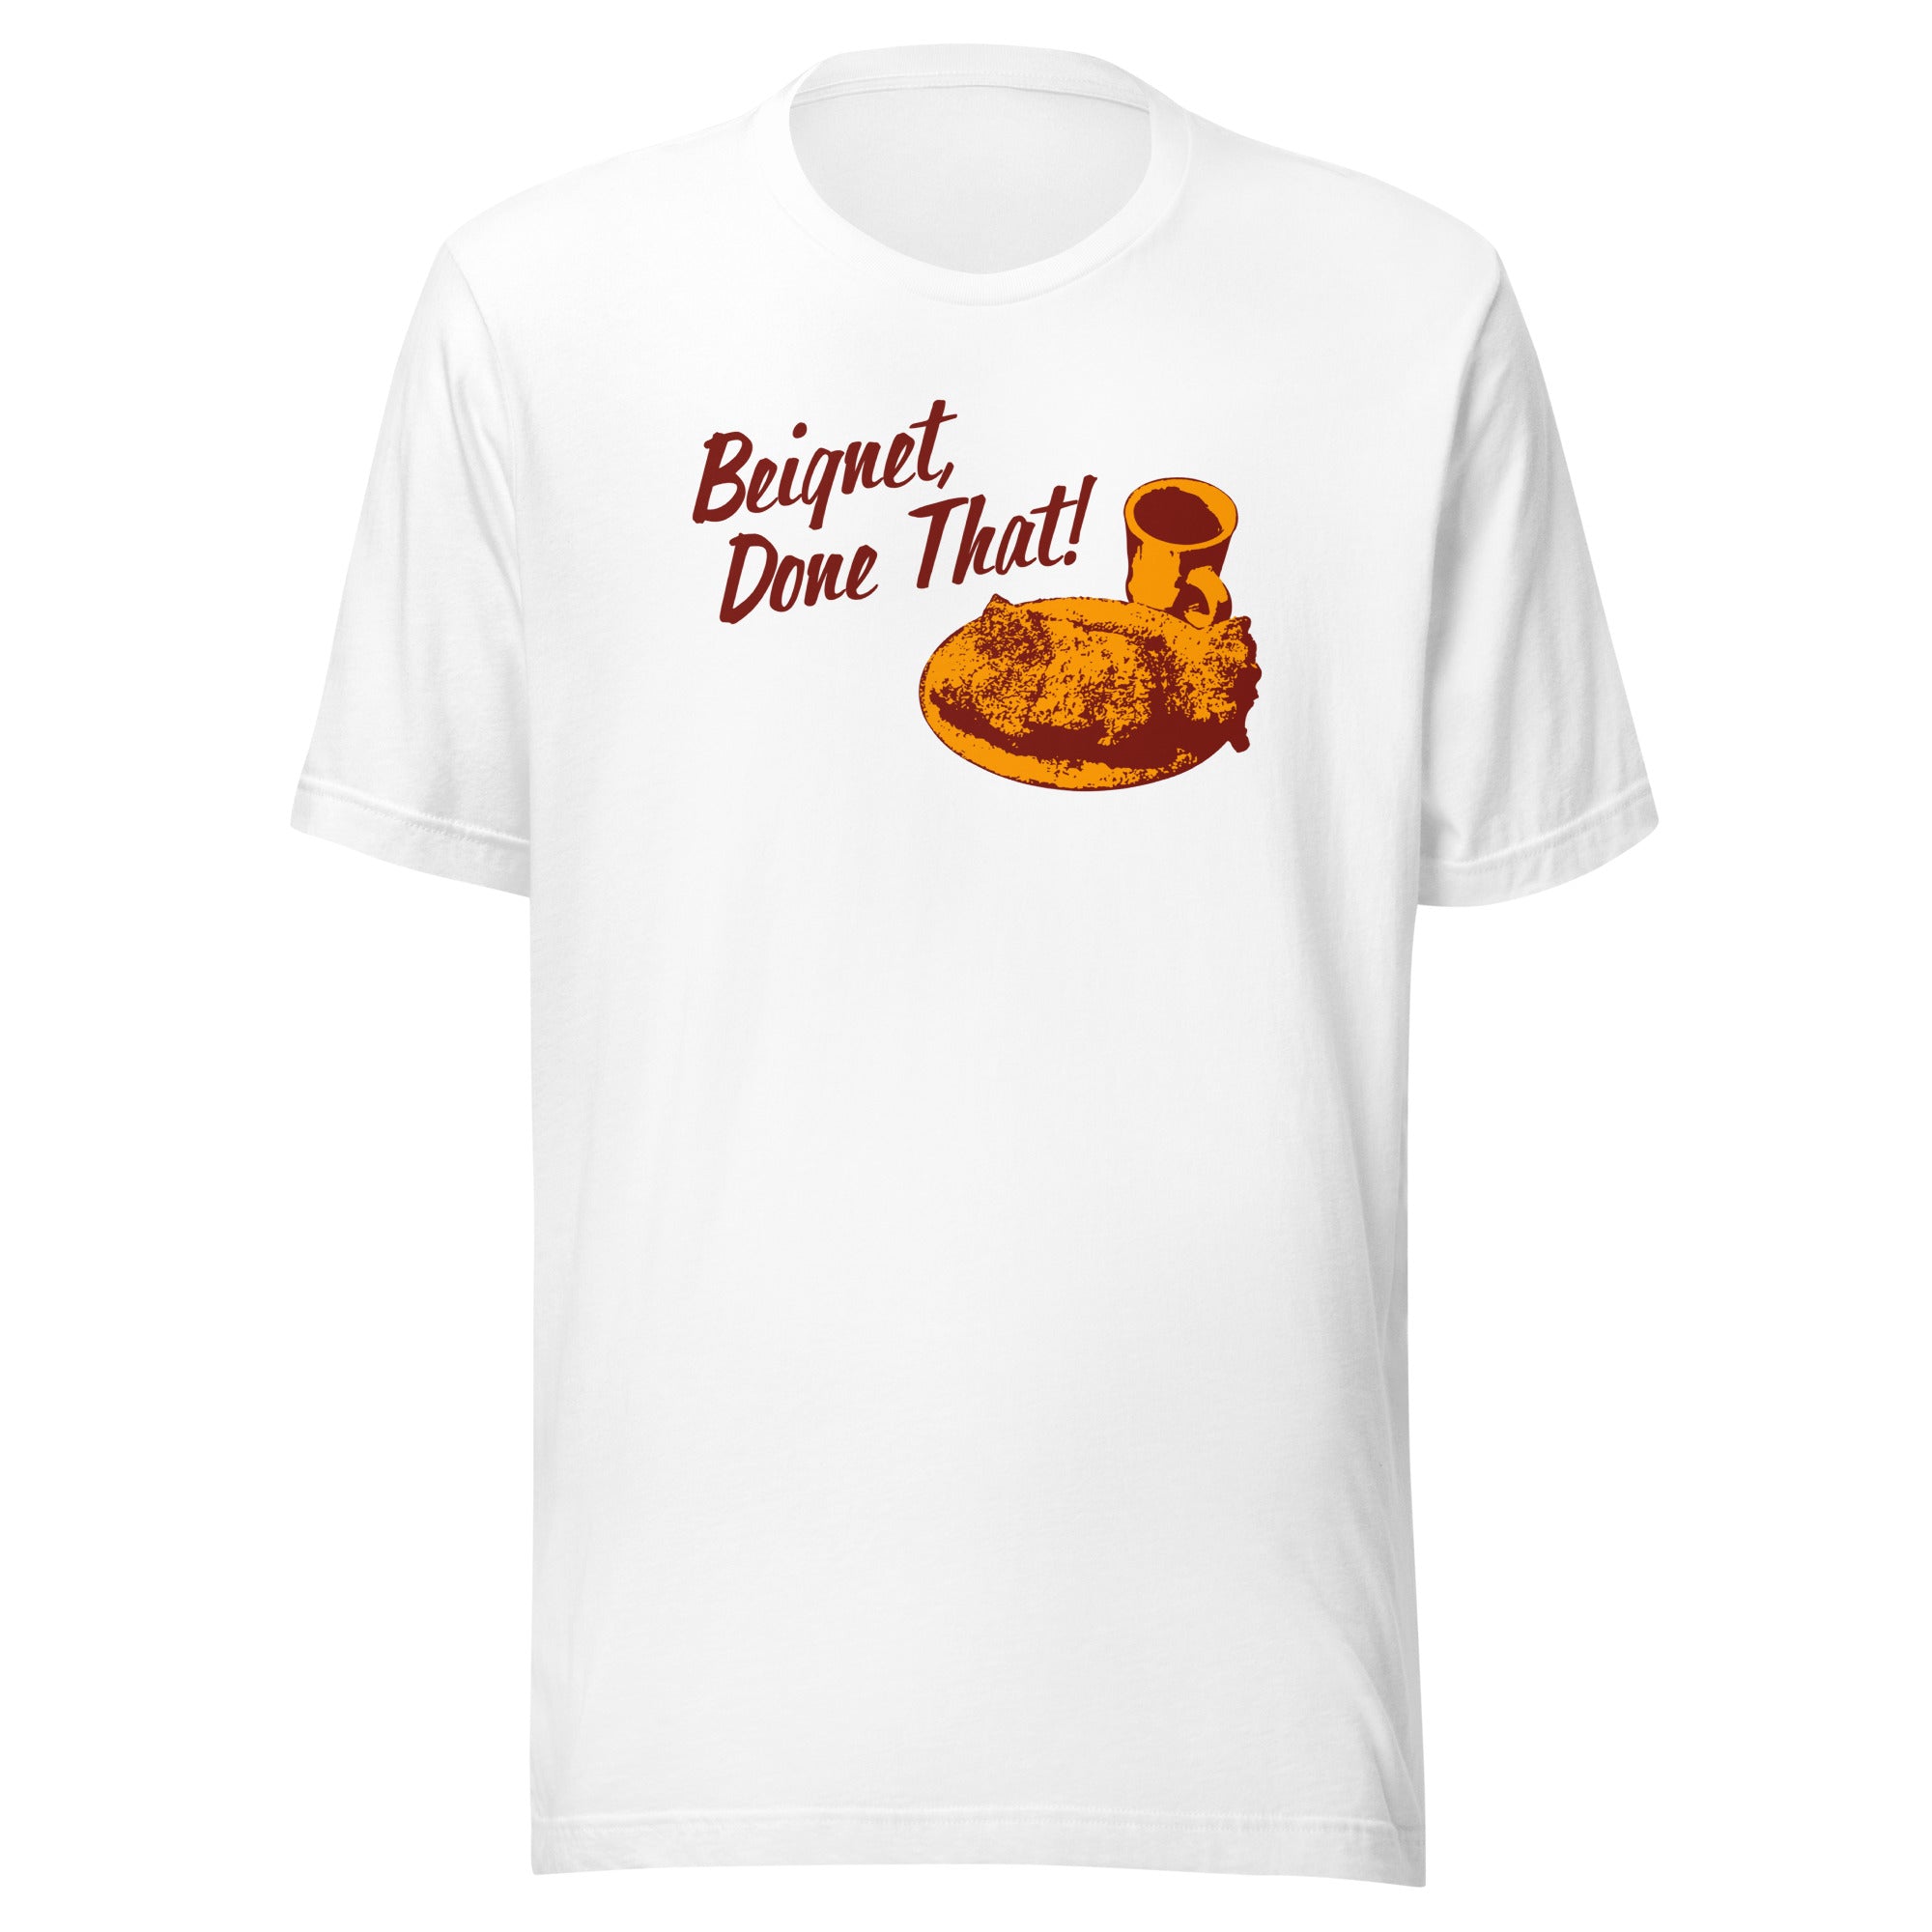 Conan O'Brien Needs A Friend: Beignet, Done That T-shirt (White)